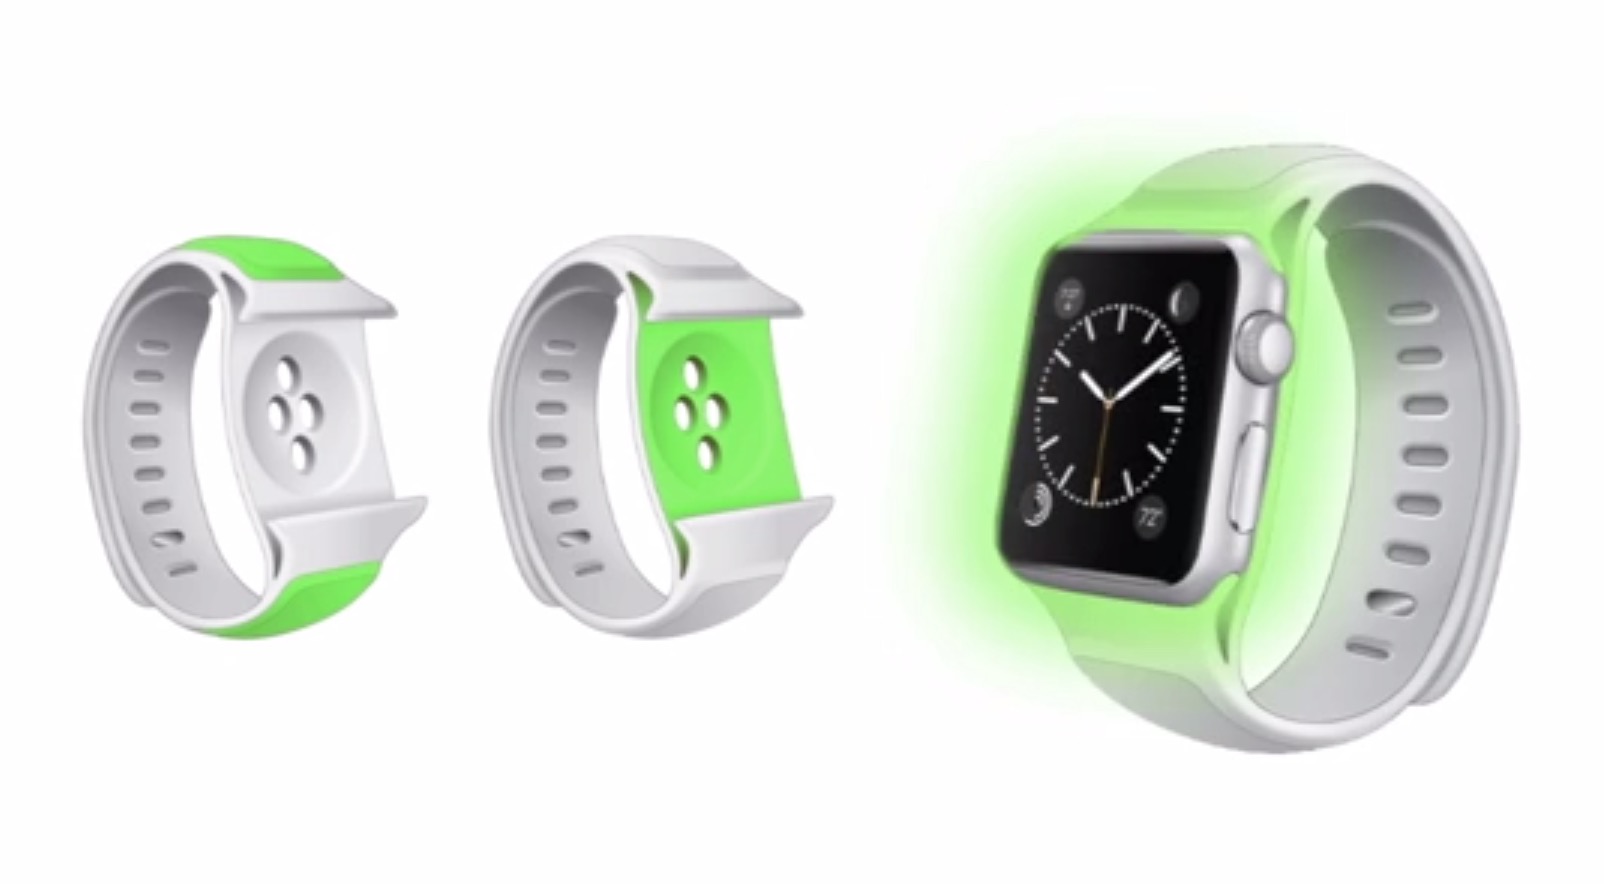 ｢Apple Watch｣用のバッテリー内蔵ベルト｢Reserve Strap｣が登場 − バッテリー駆動時間の問題を解消